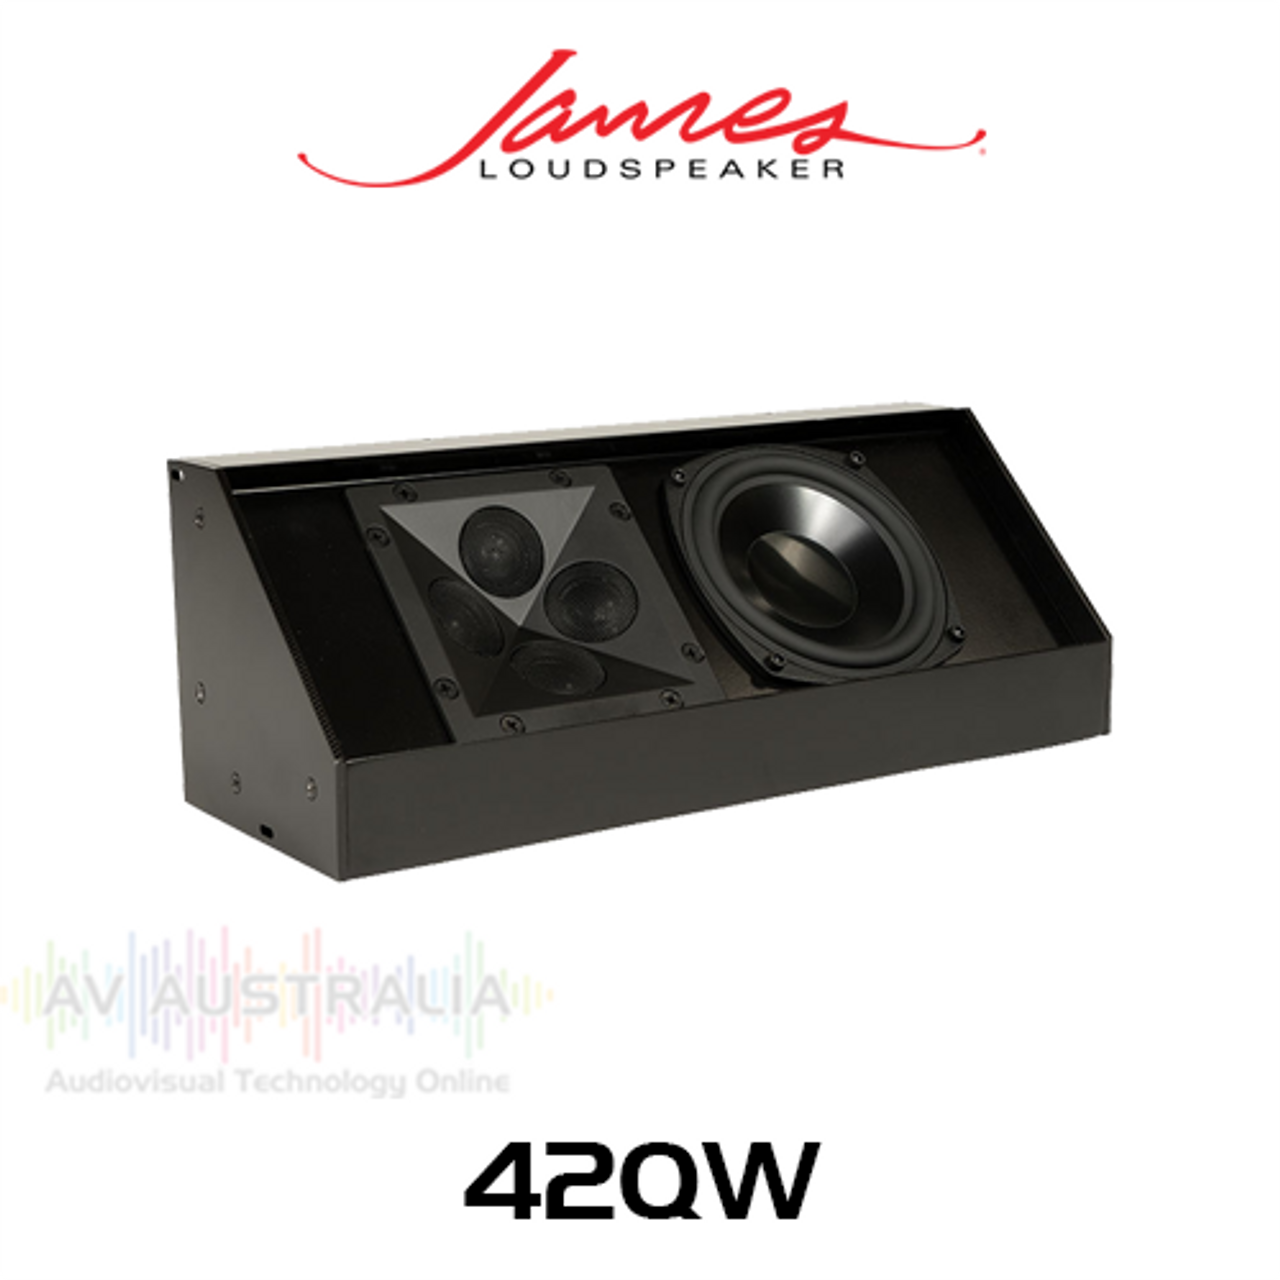 James Loudspeaker 42QW 4" Full-Range Wedge Speaker  (Each)